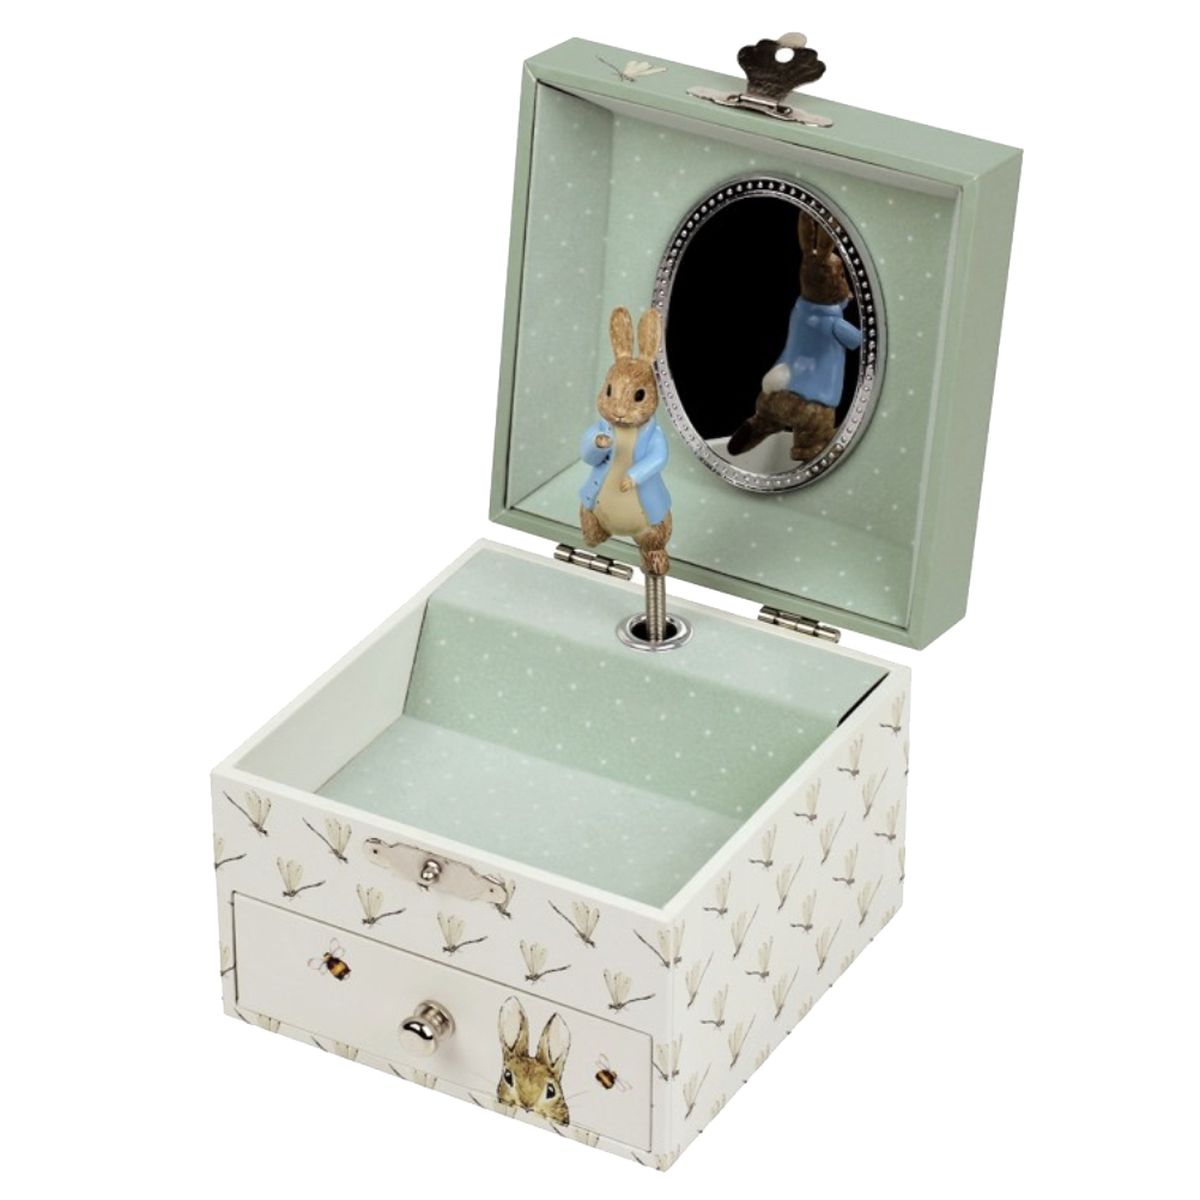 Peter Rabbit musical jewelry box